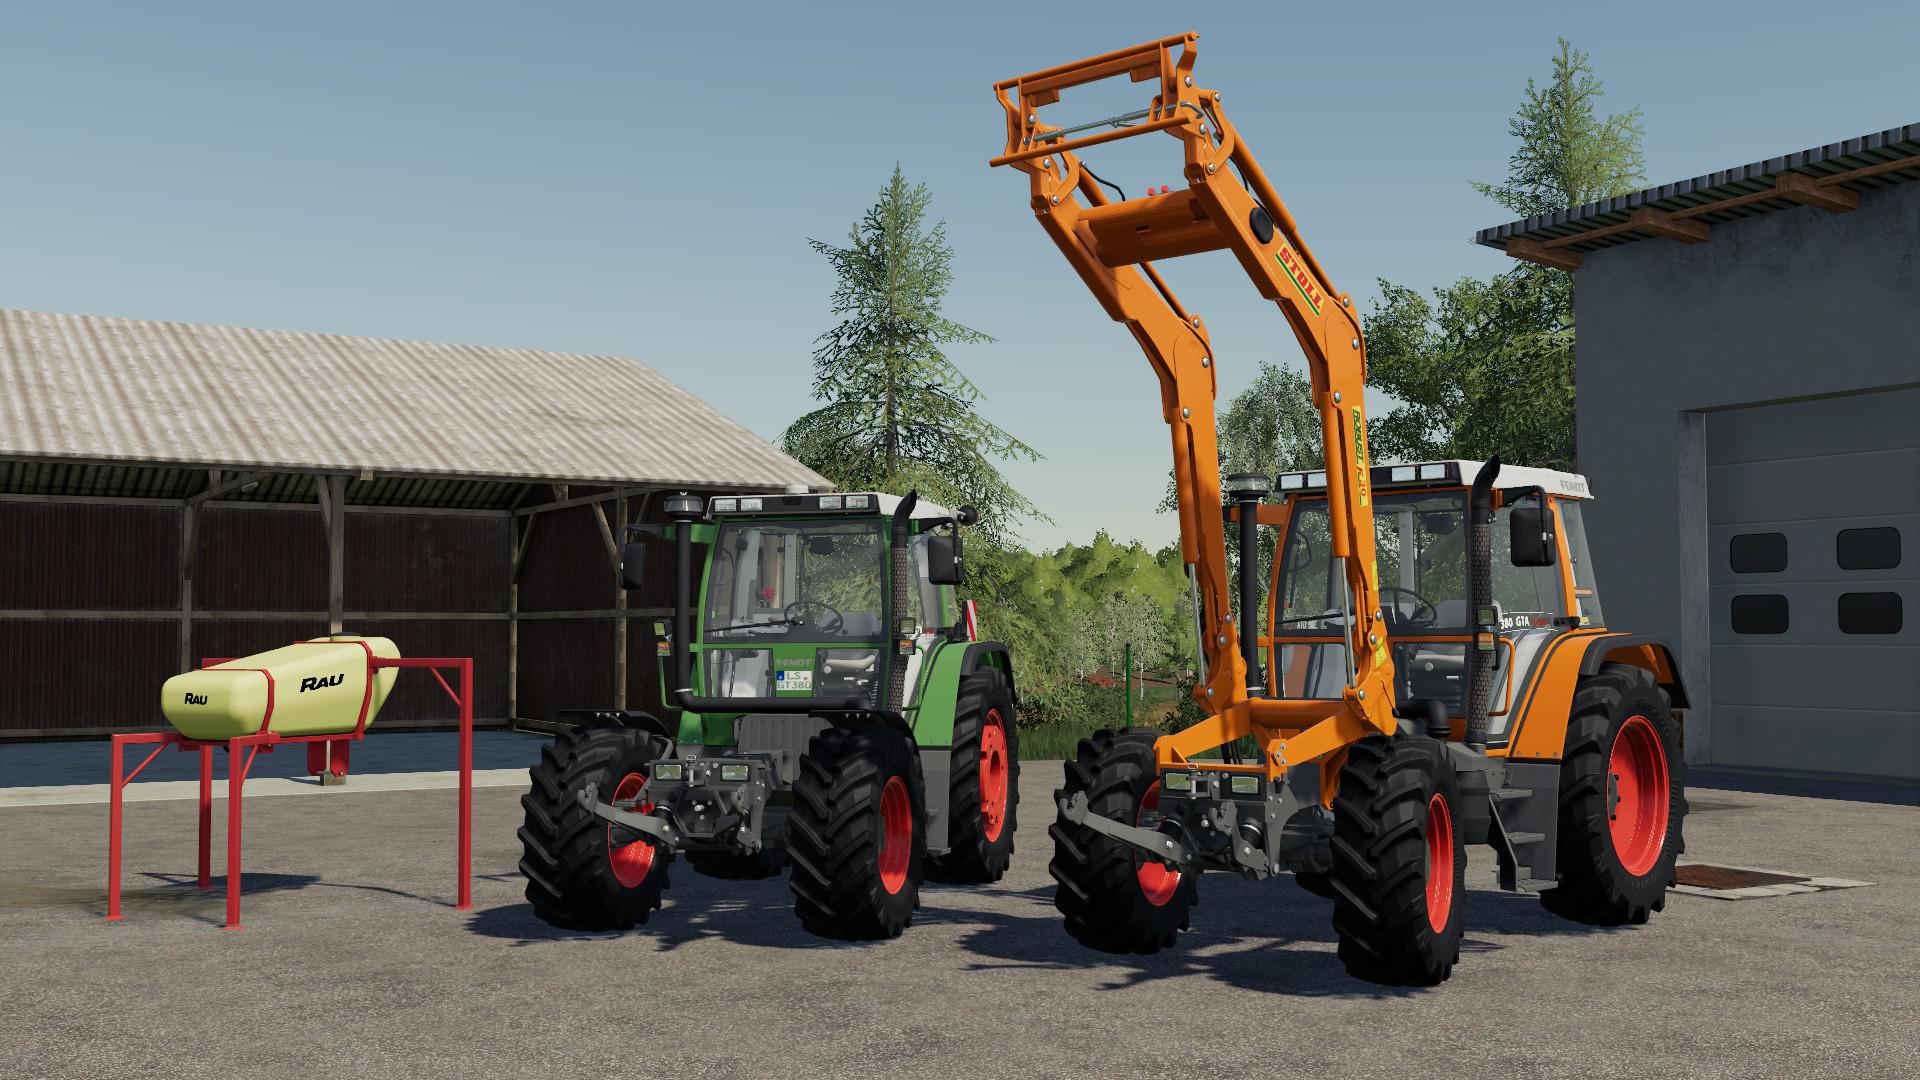 Fendt Gta V Tractors Farming Simulator Mod Ls Mod My Xxx Hot Girl 3245